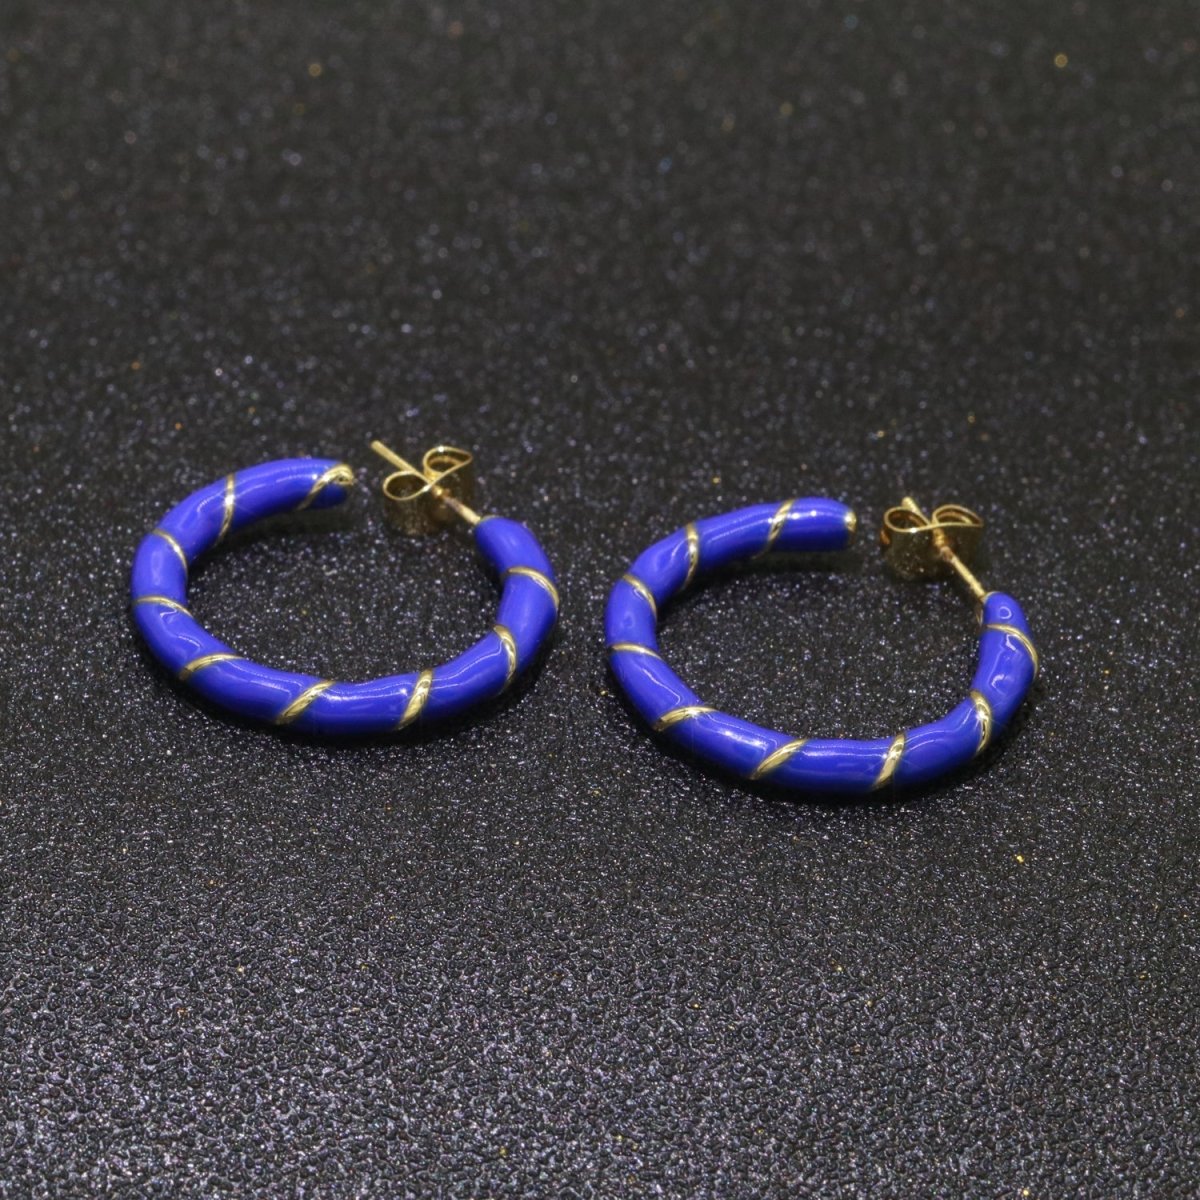 Dark Blue Enamel Hoop Earring with Gold Swirl 26mm Hoop earring Jewelry Gift T-002 - DLUXCA